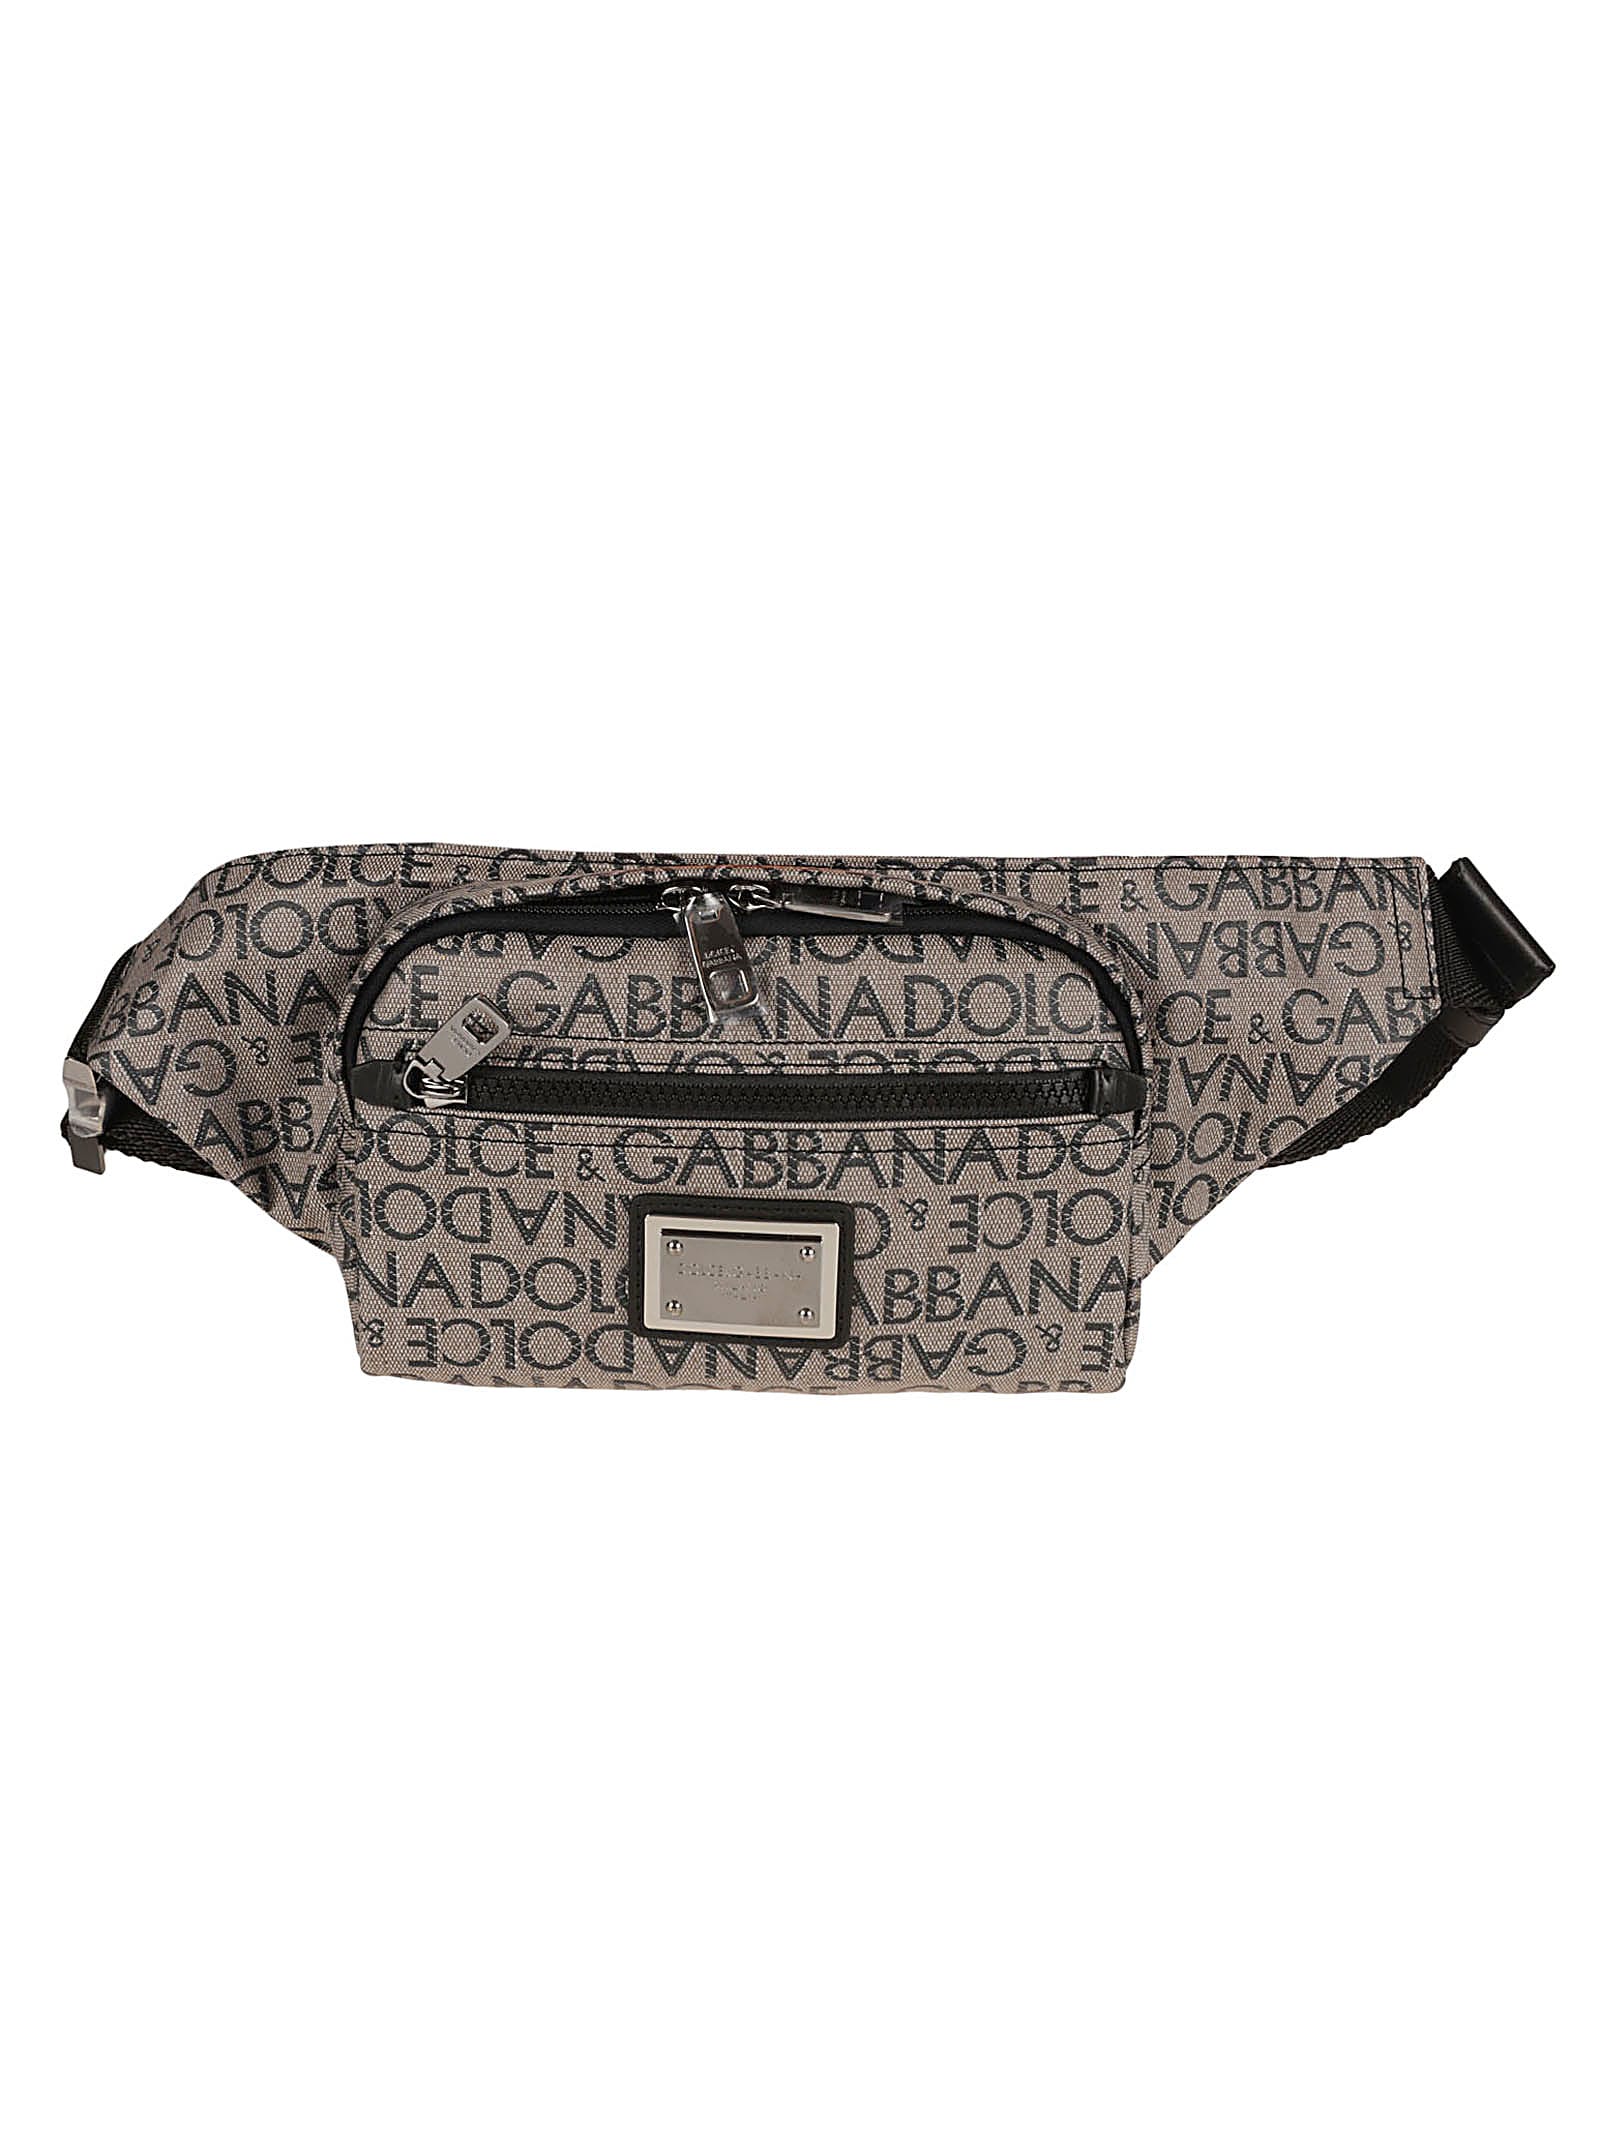 Dolce & Gabbana Logo Plaque Belt Bag In Brown/black/blue